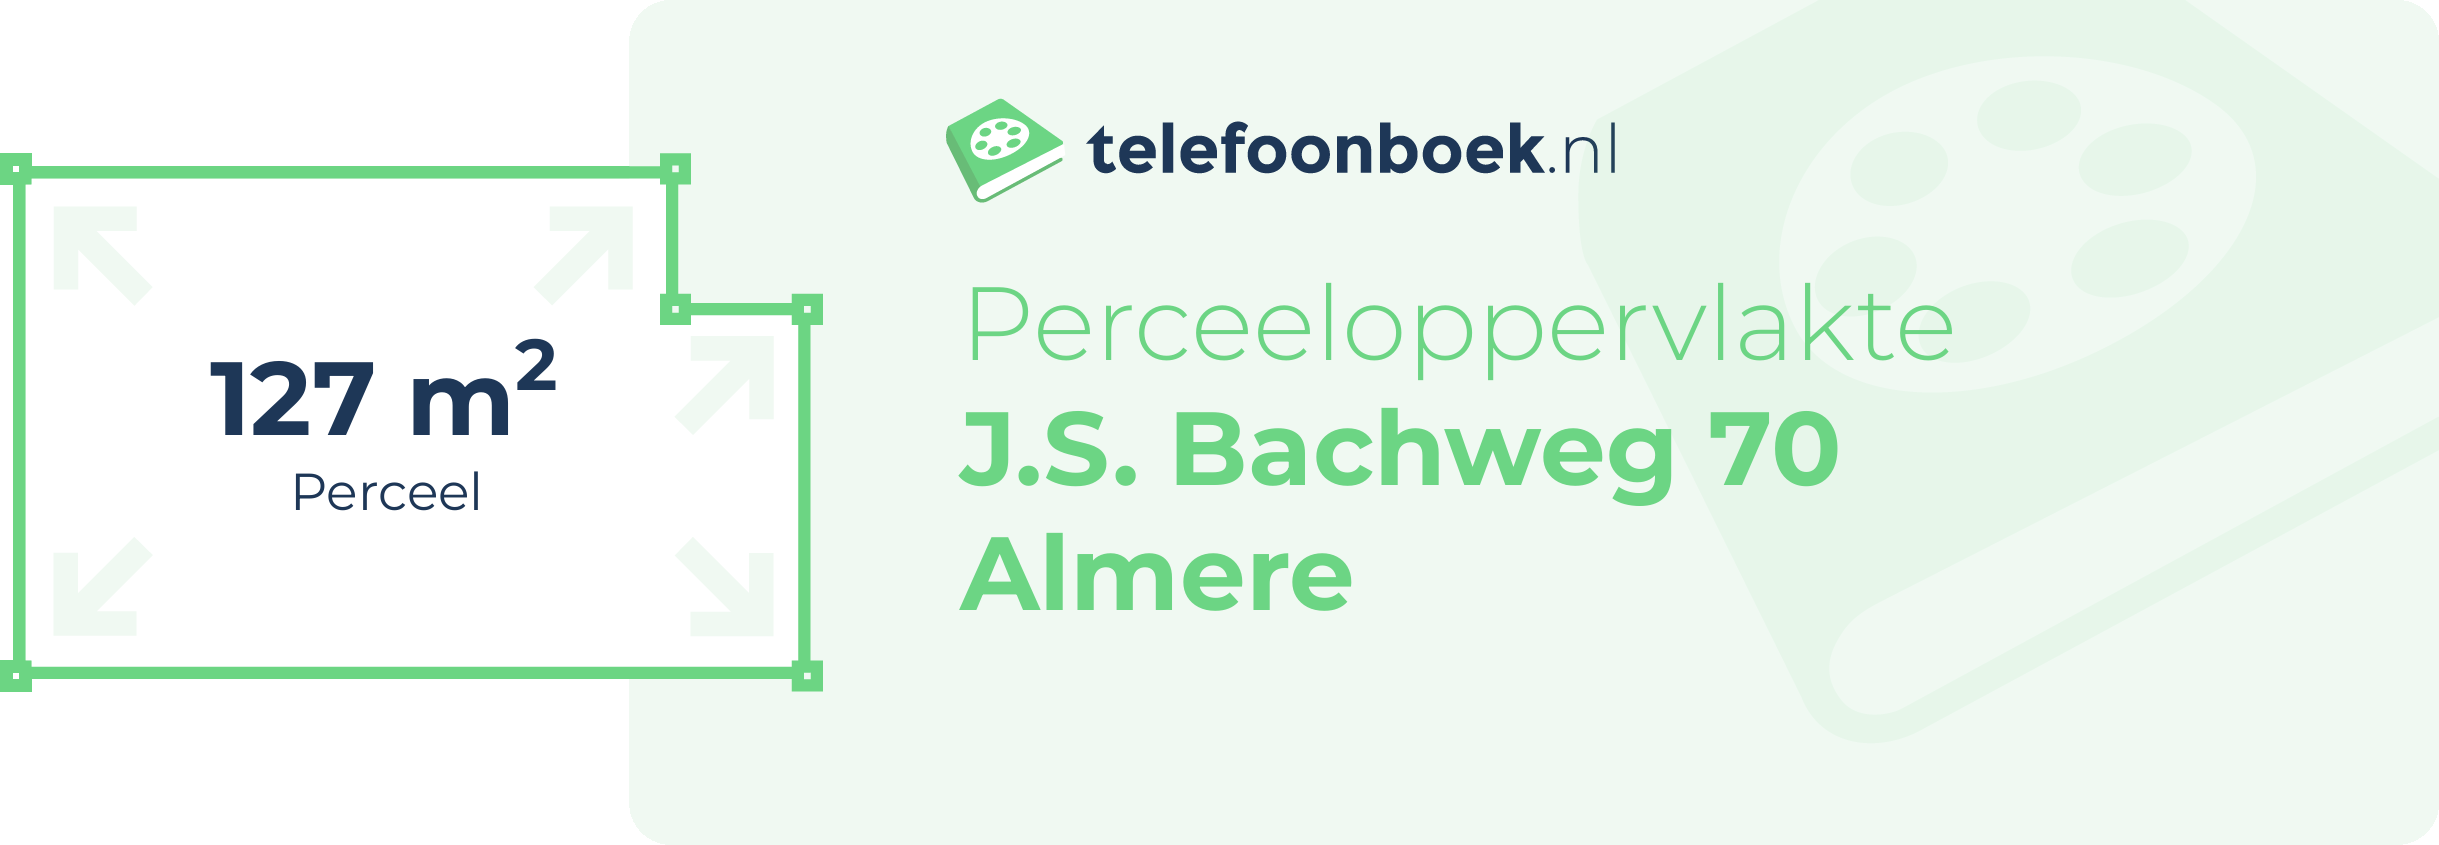 Perceeloppervlakte J.S. Bachweg 70 Almere